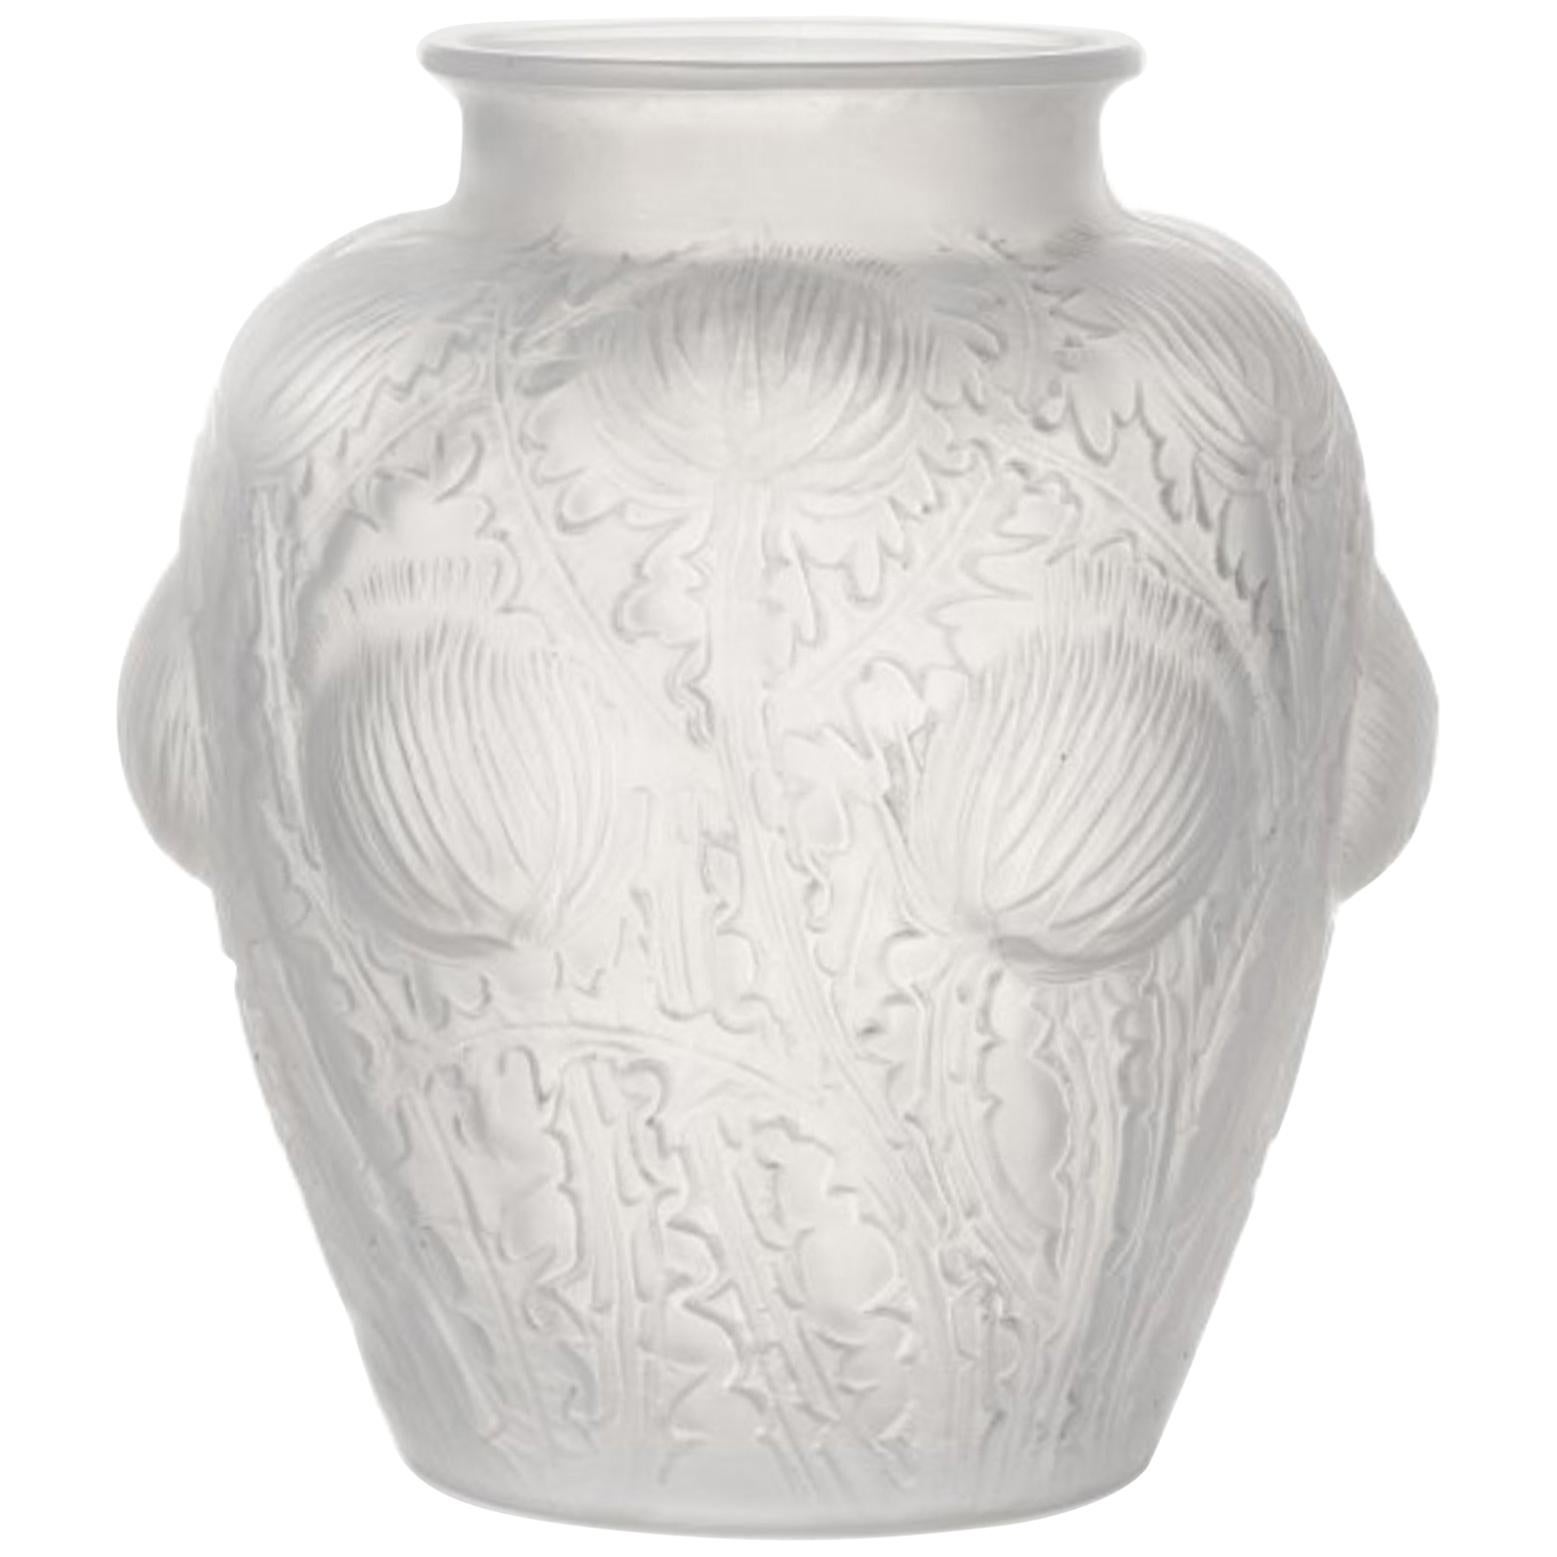 René Lalique Domremy Glass Vase, Marcilhac No. 979, Signed R. Lalique